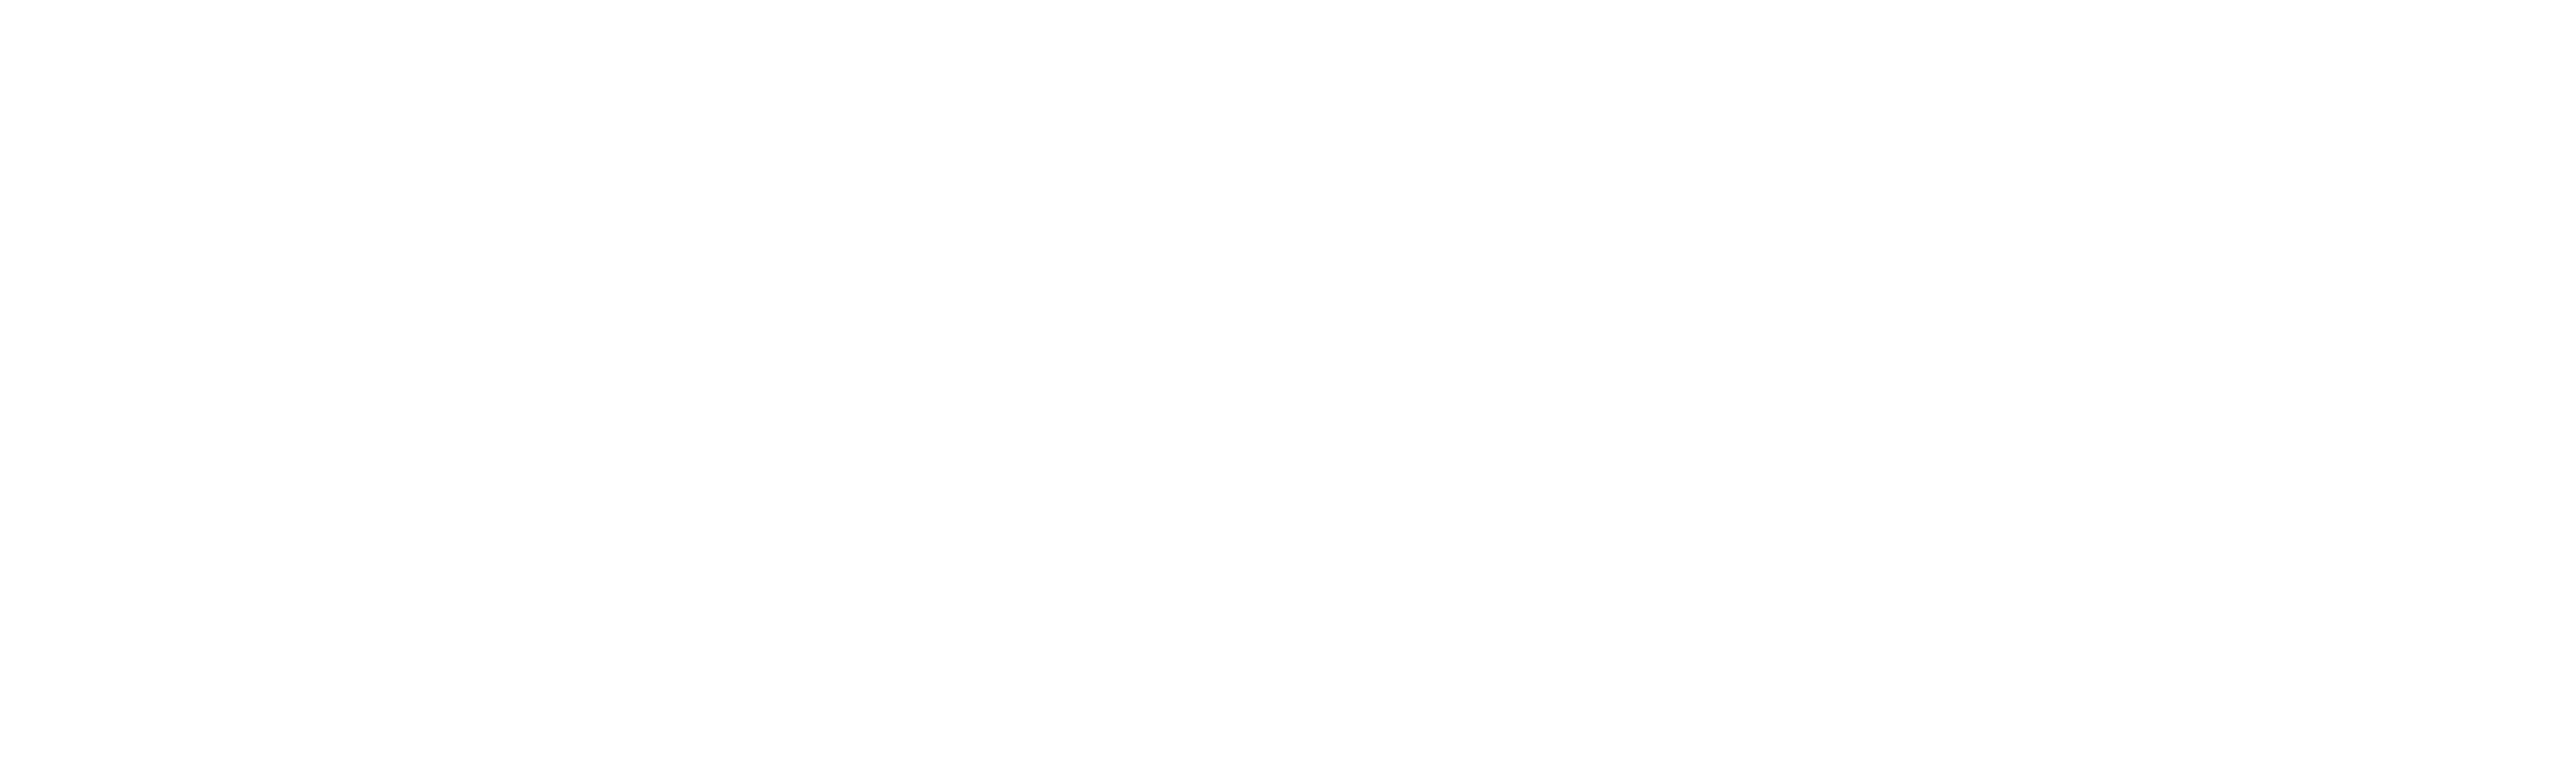 Falagrett-logo-full-white